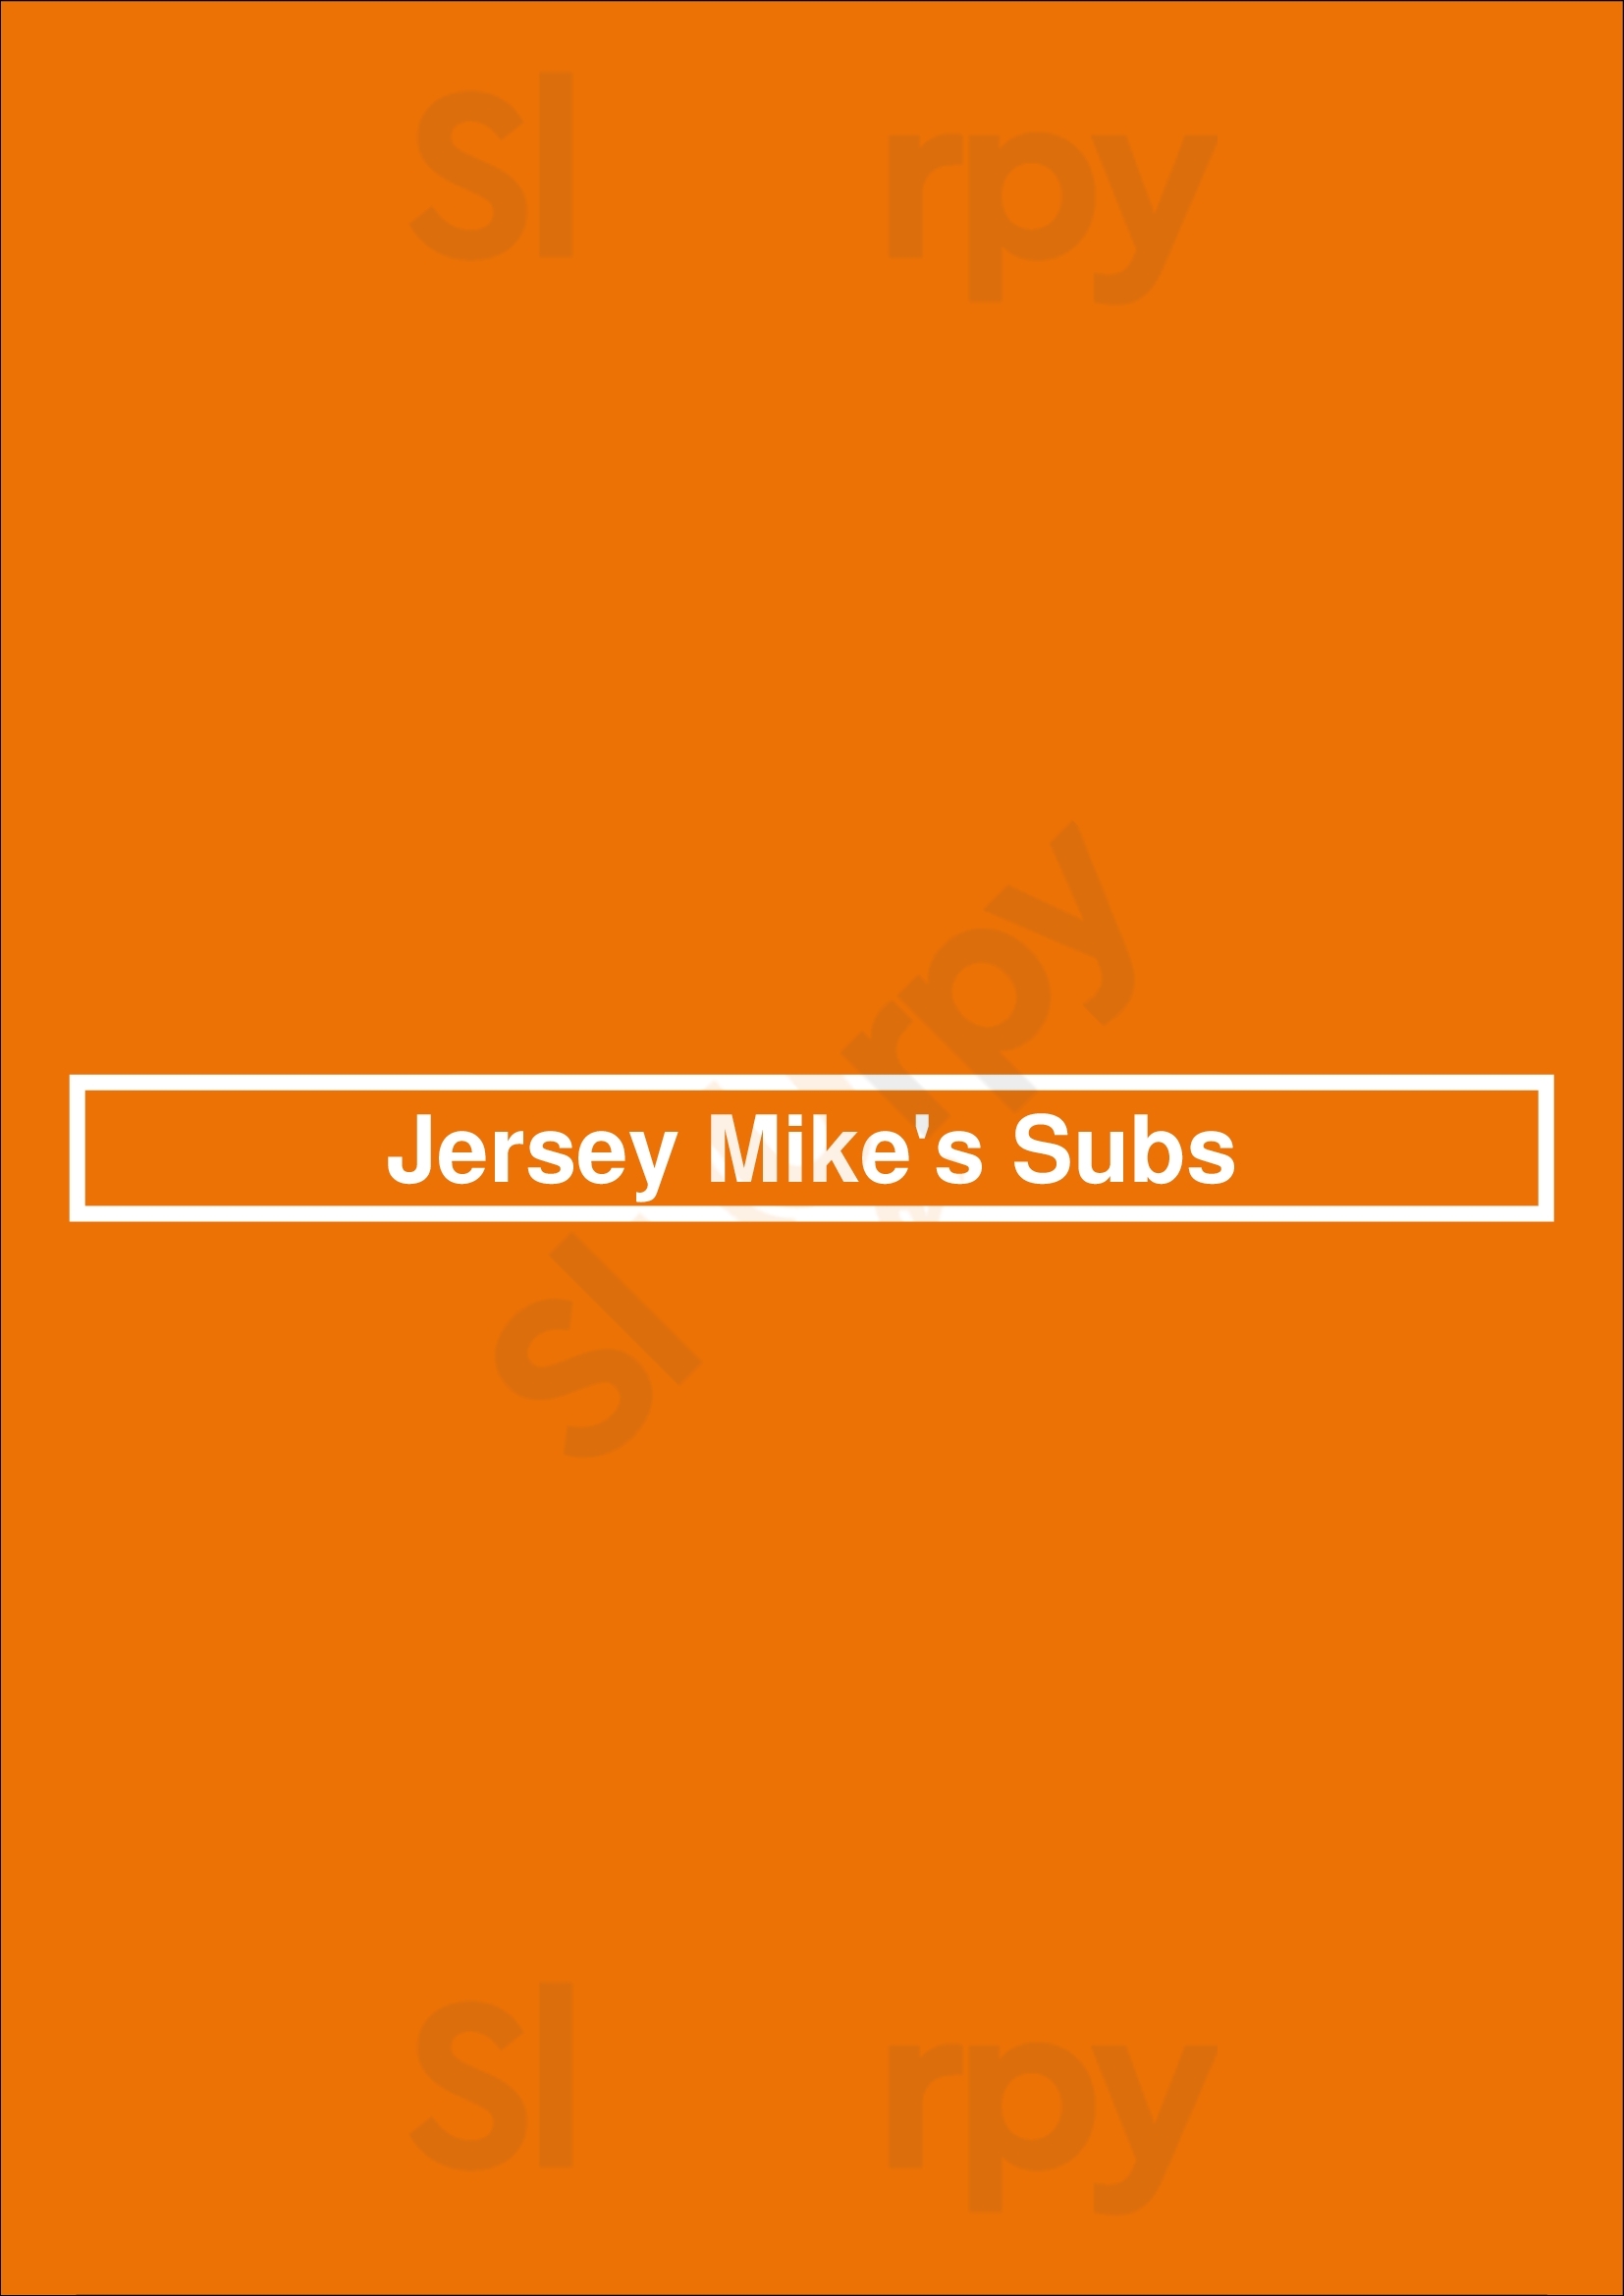 Jersey Mike's Subs Salt Lake City Menu - 1